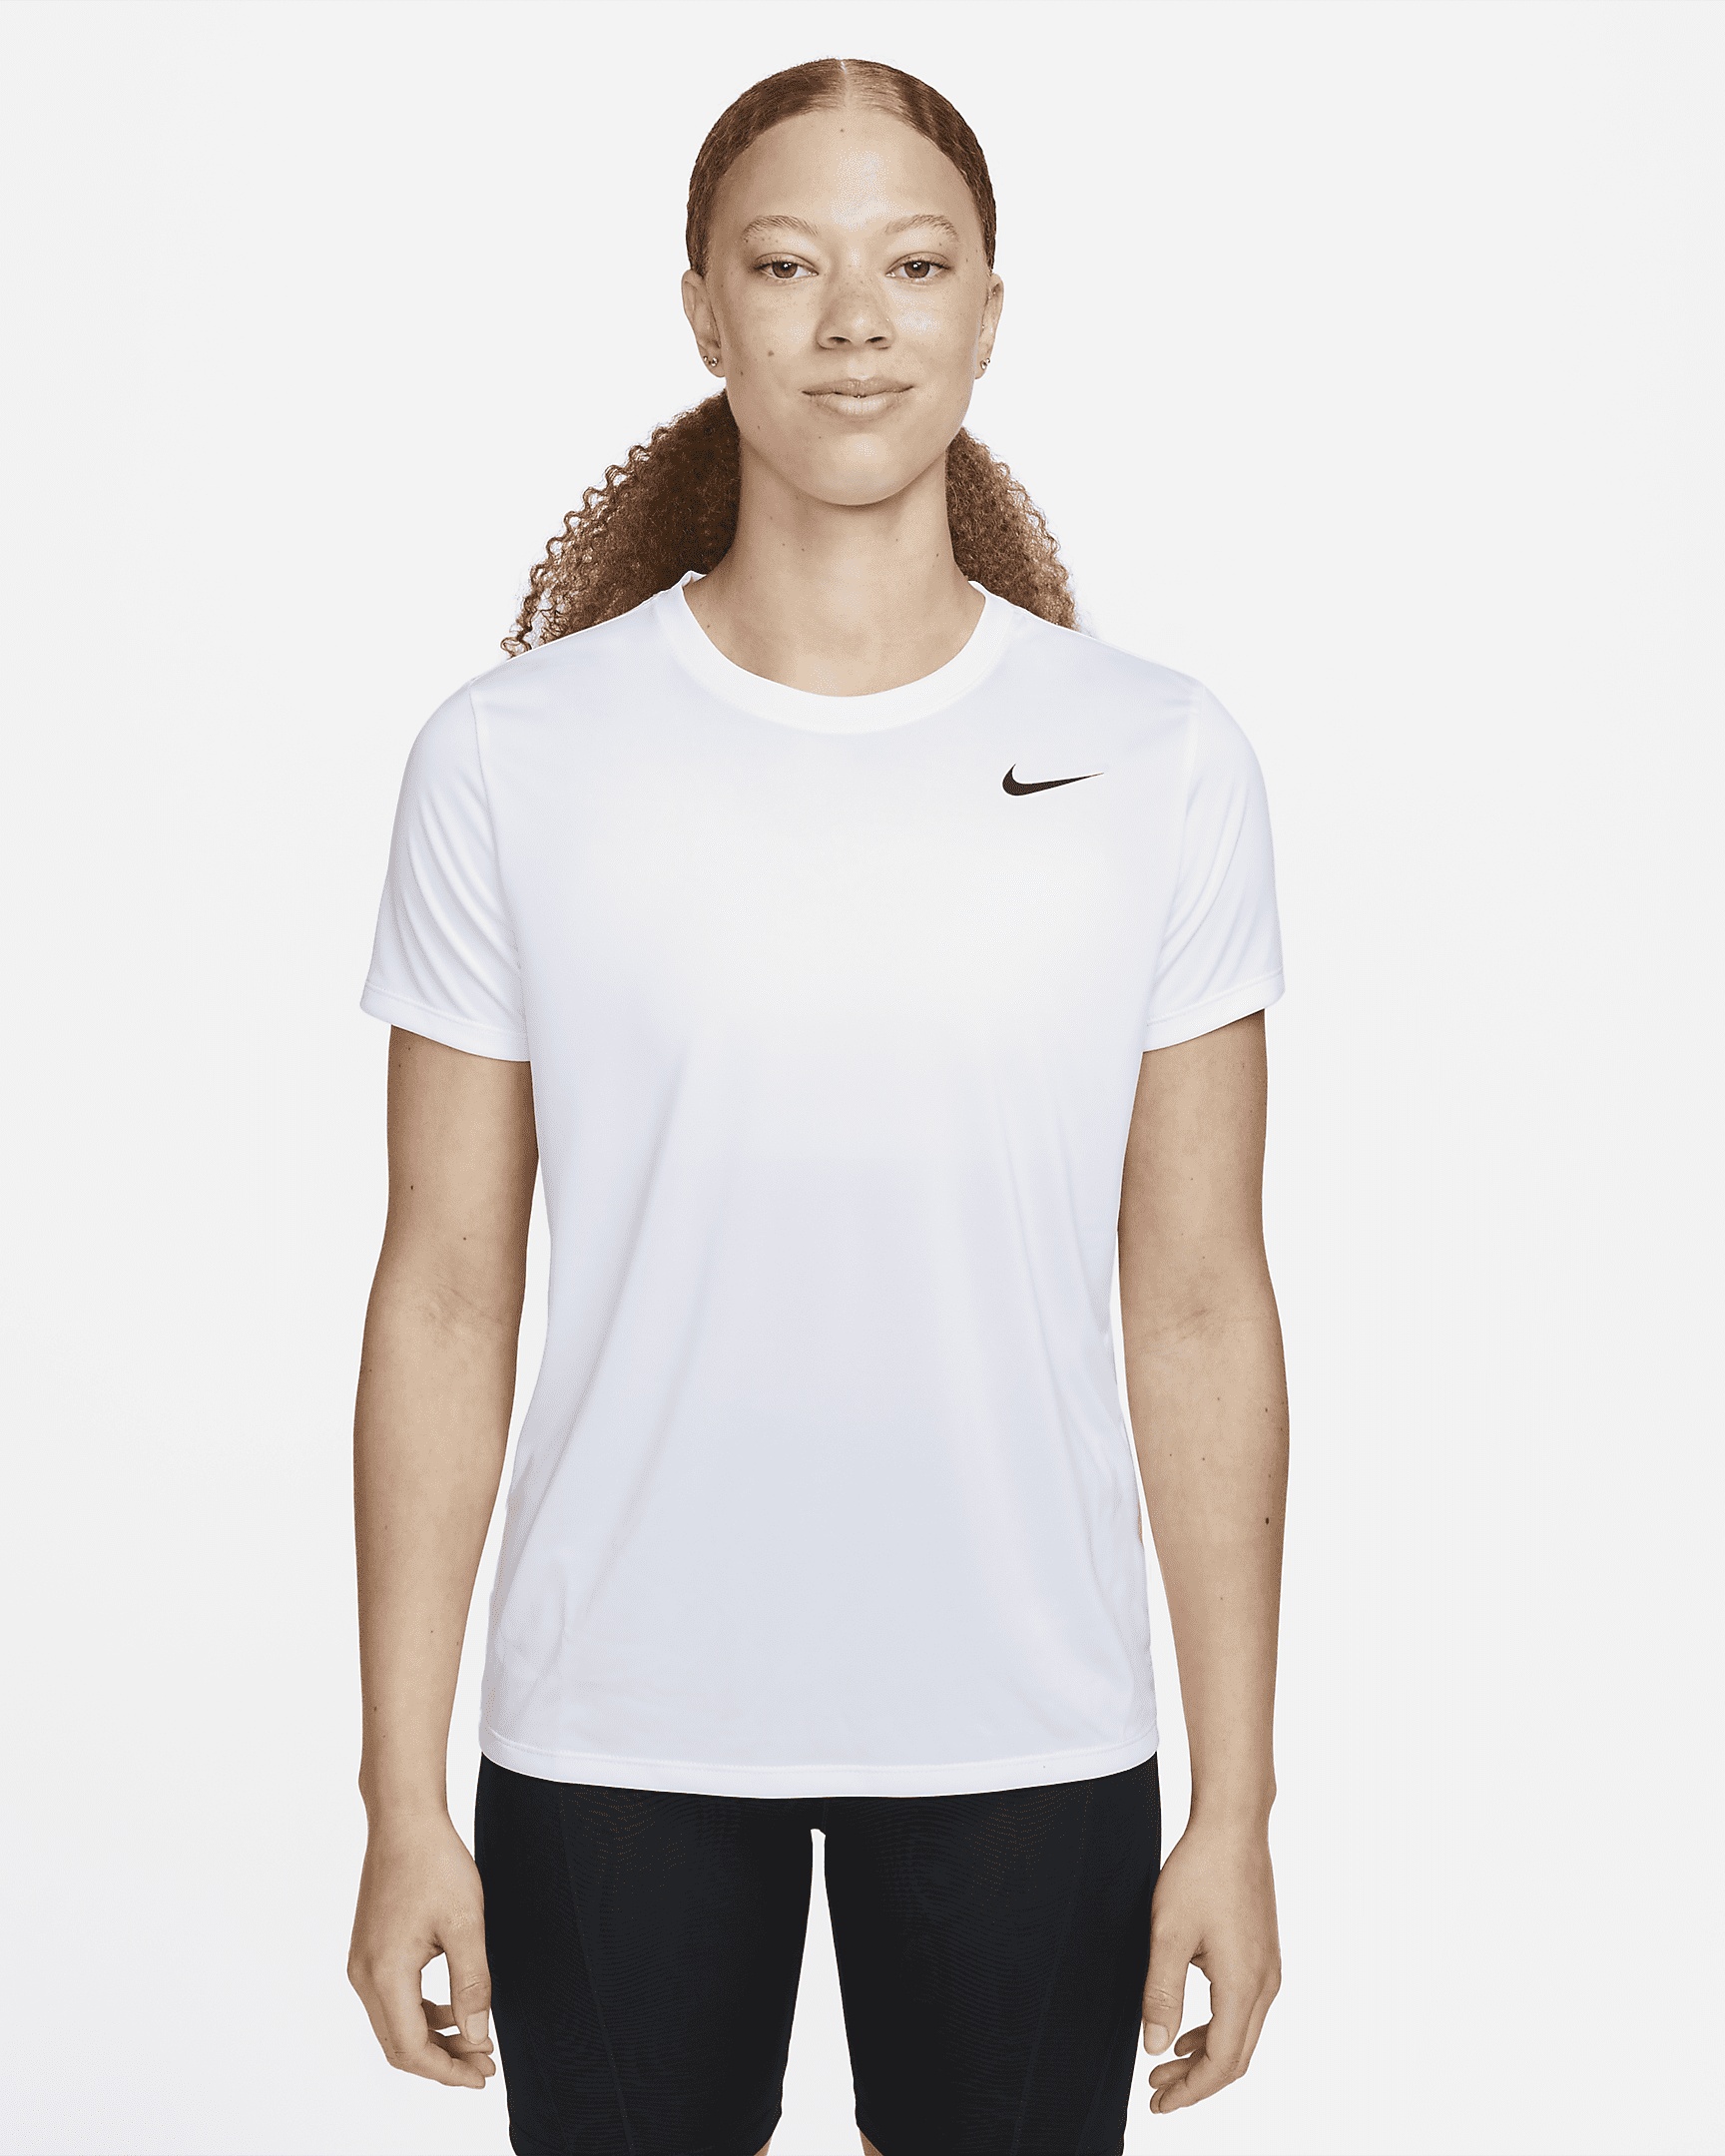 Nike Women's Dri-FIT T-Shirt - 1